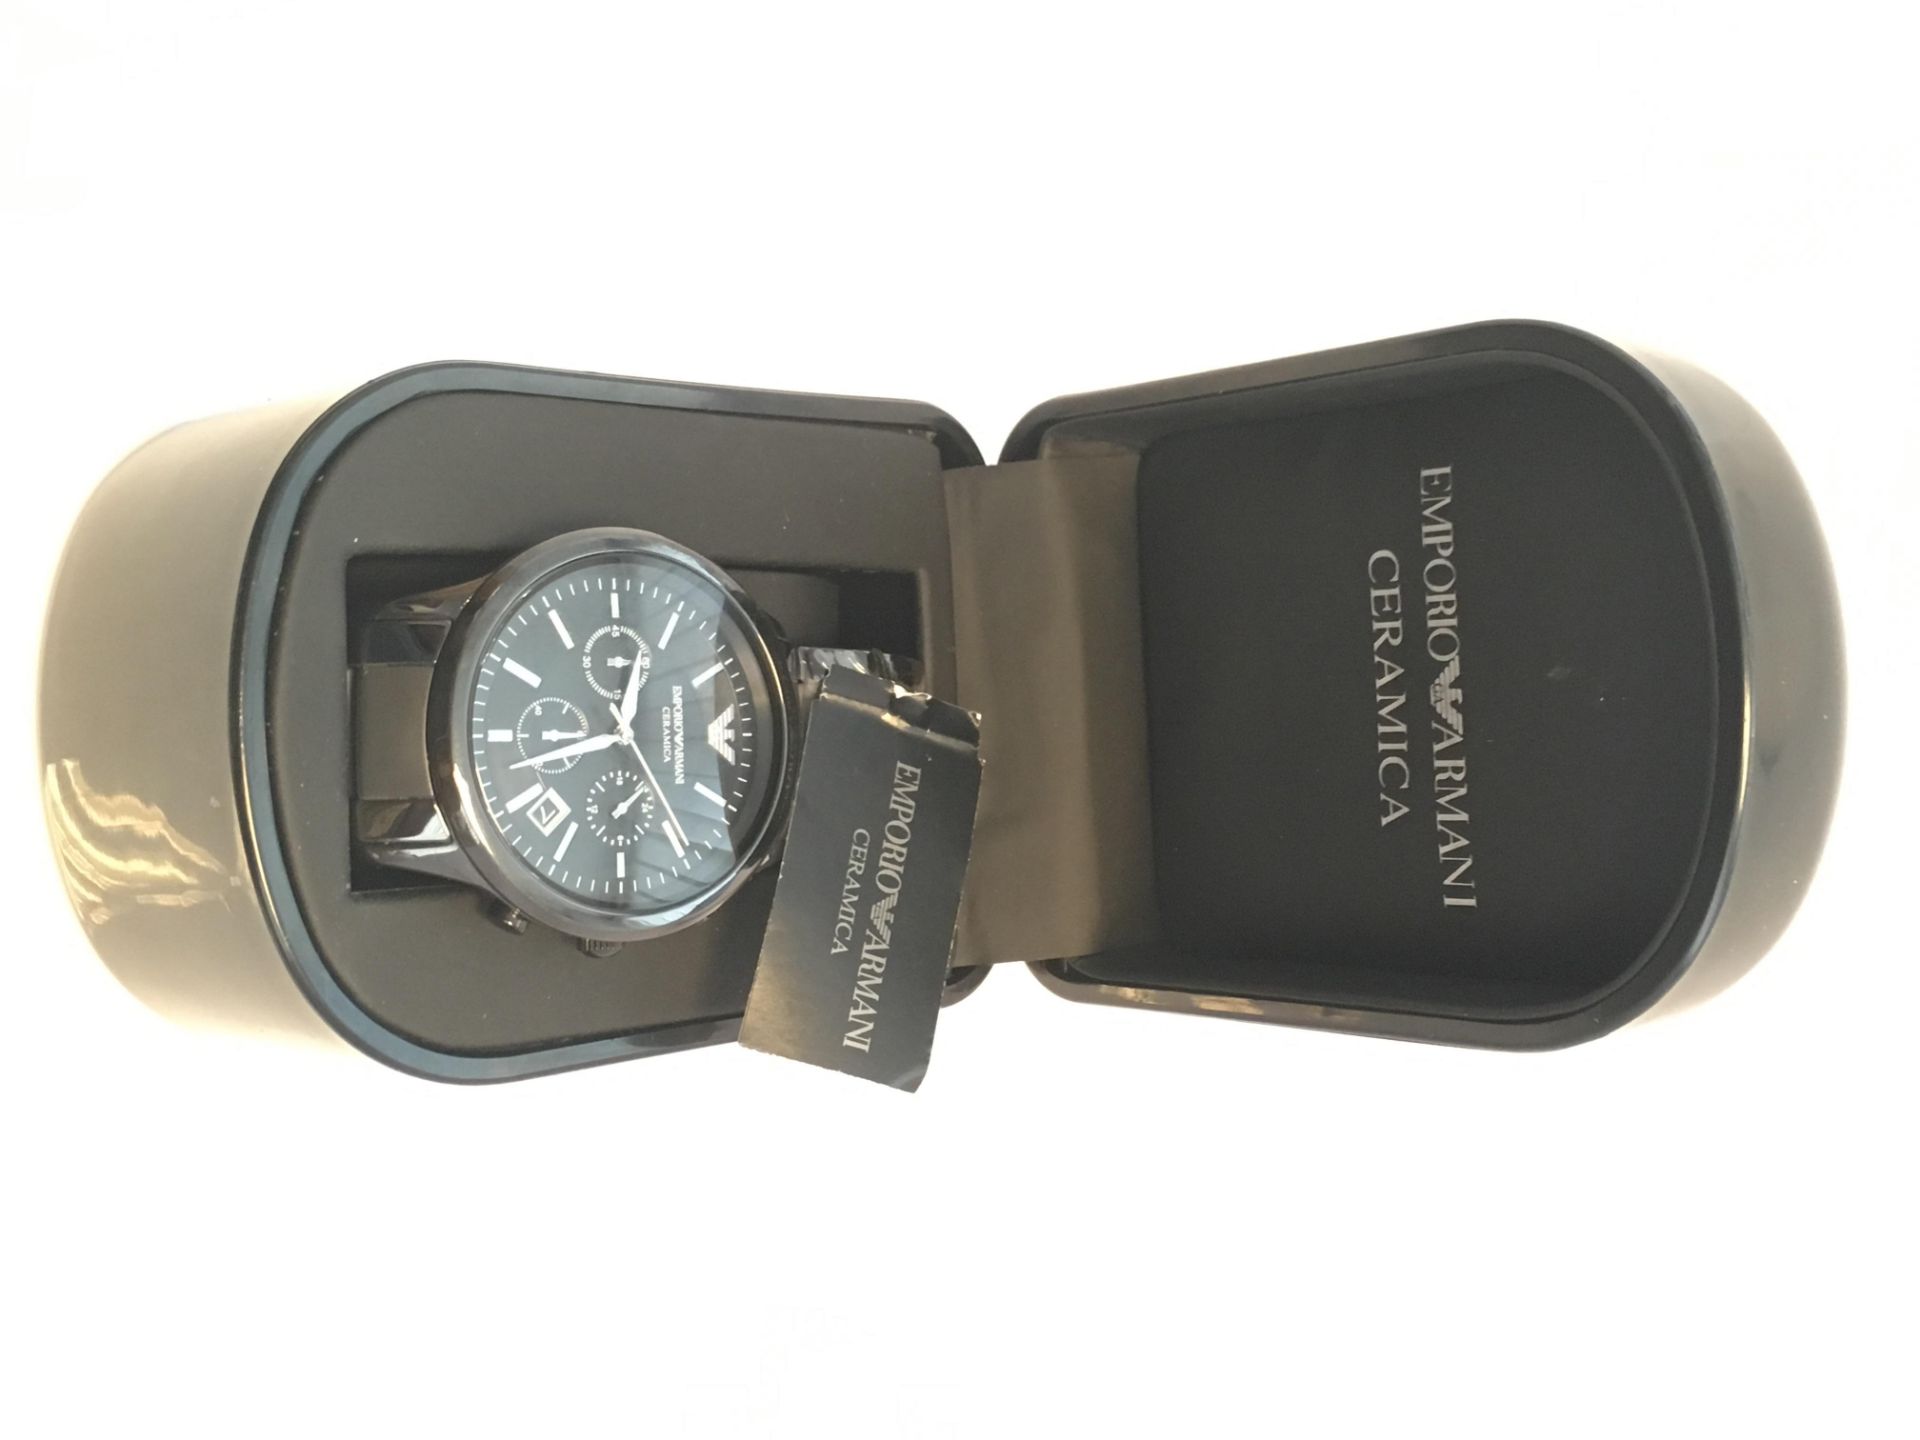 Emporio Armani Model AR1452 Watch - Image 2 of 3